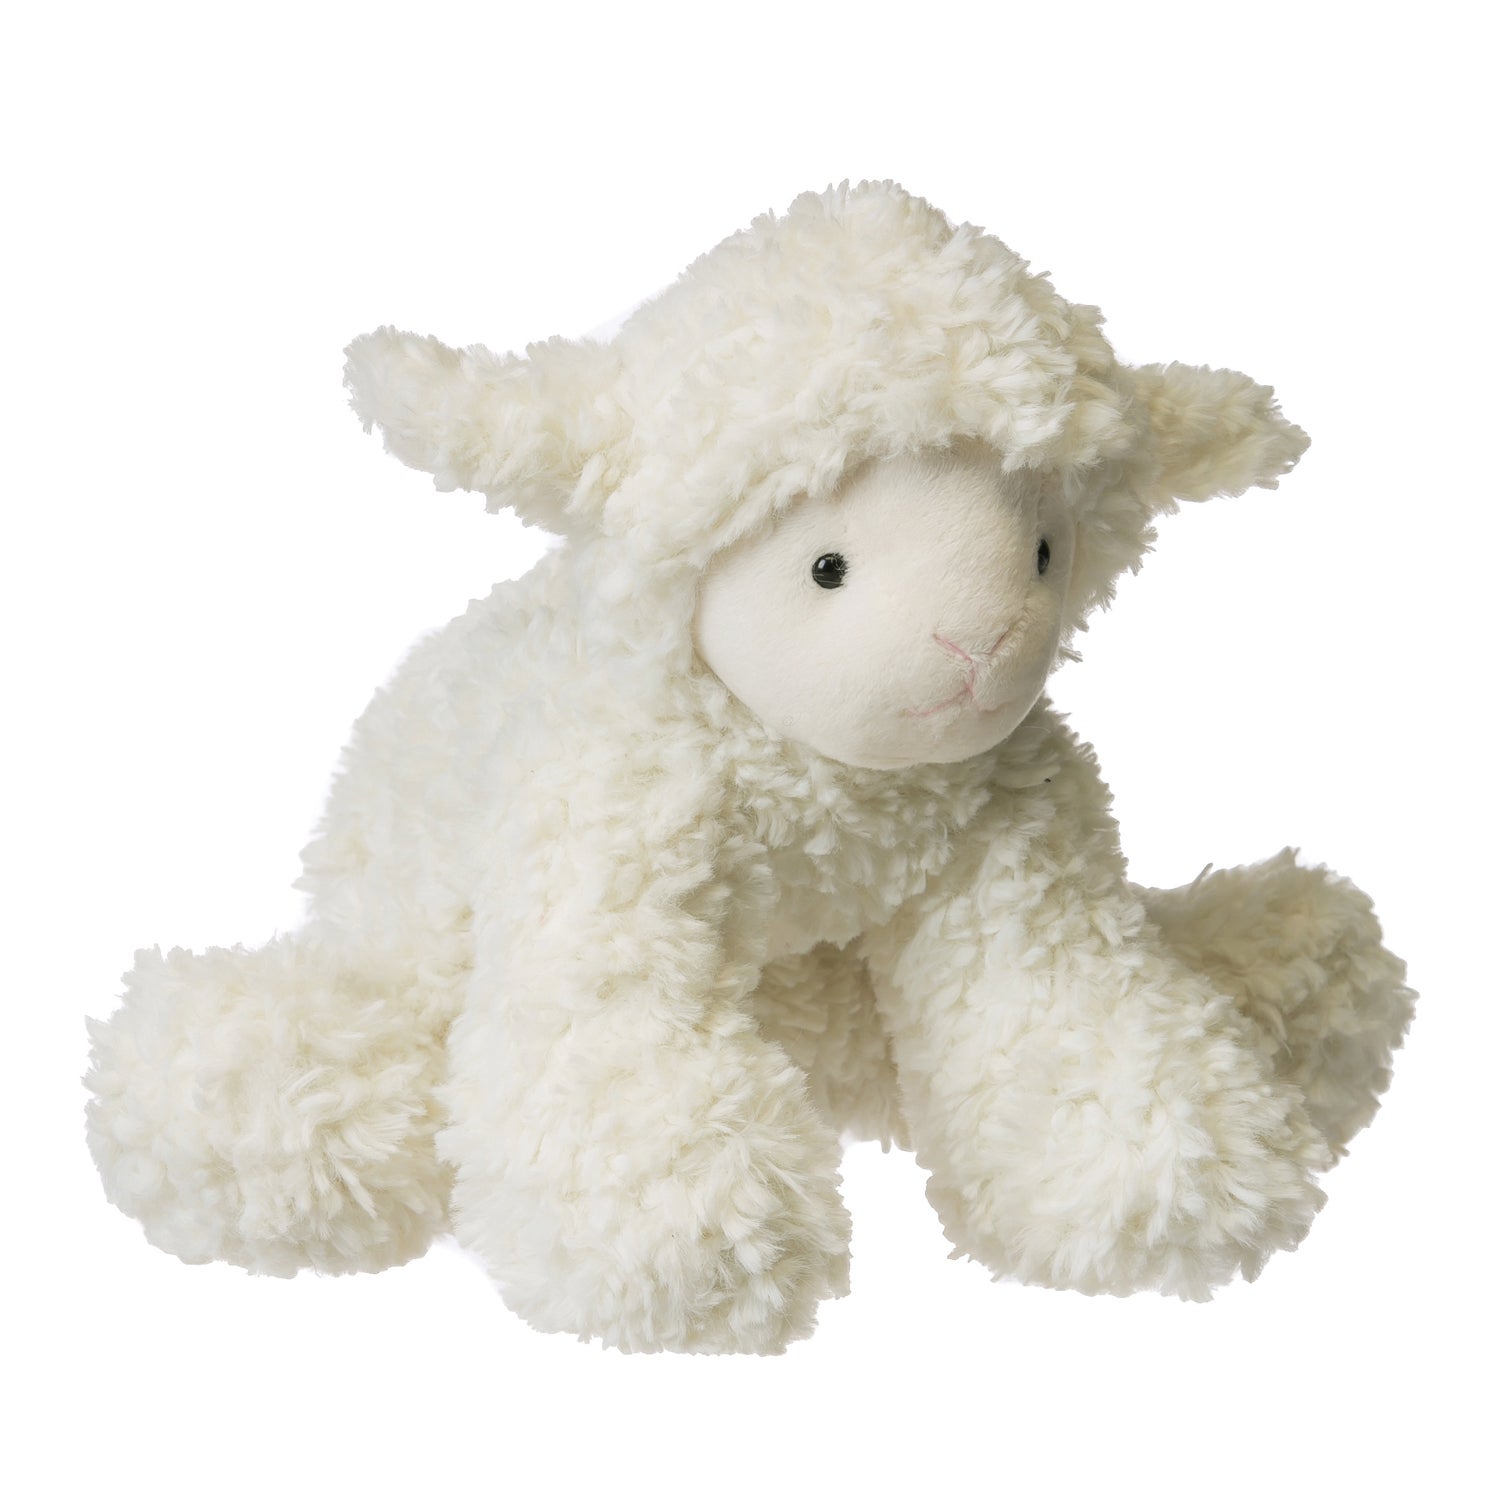 White Little Lamb Cuddly Plush Stuffed Animal